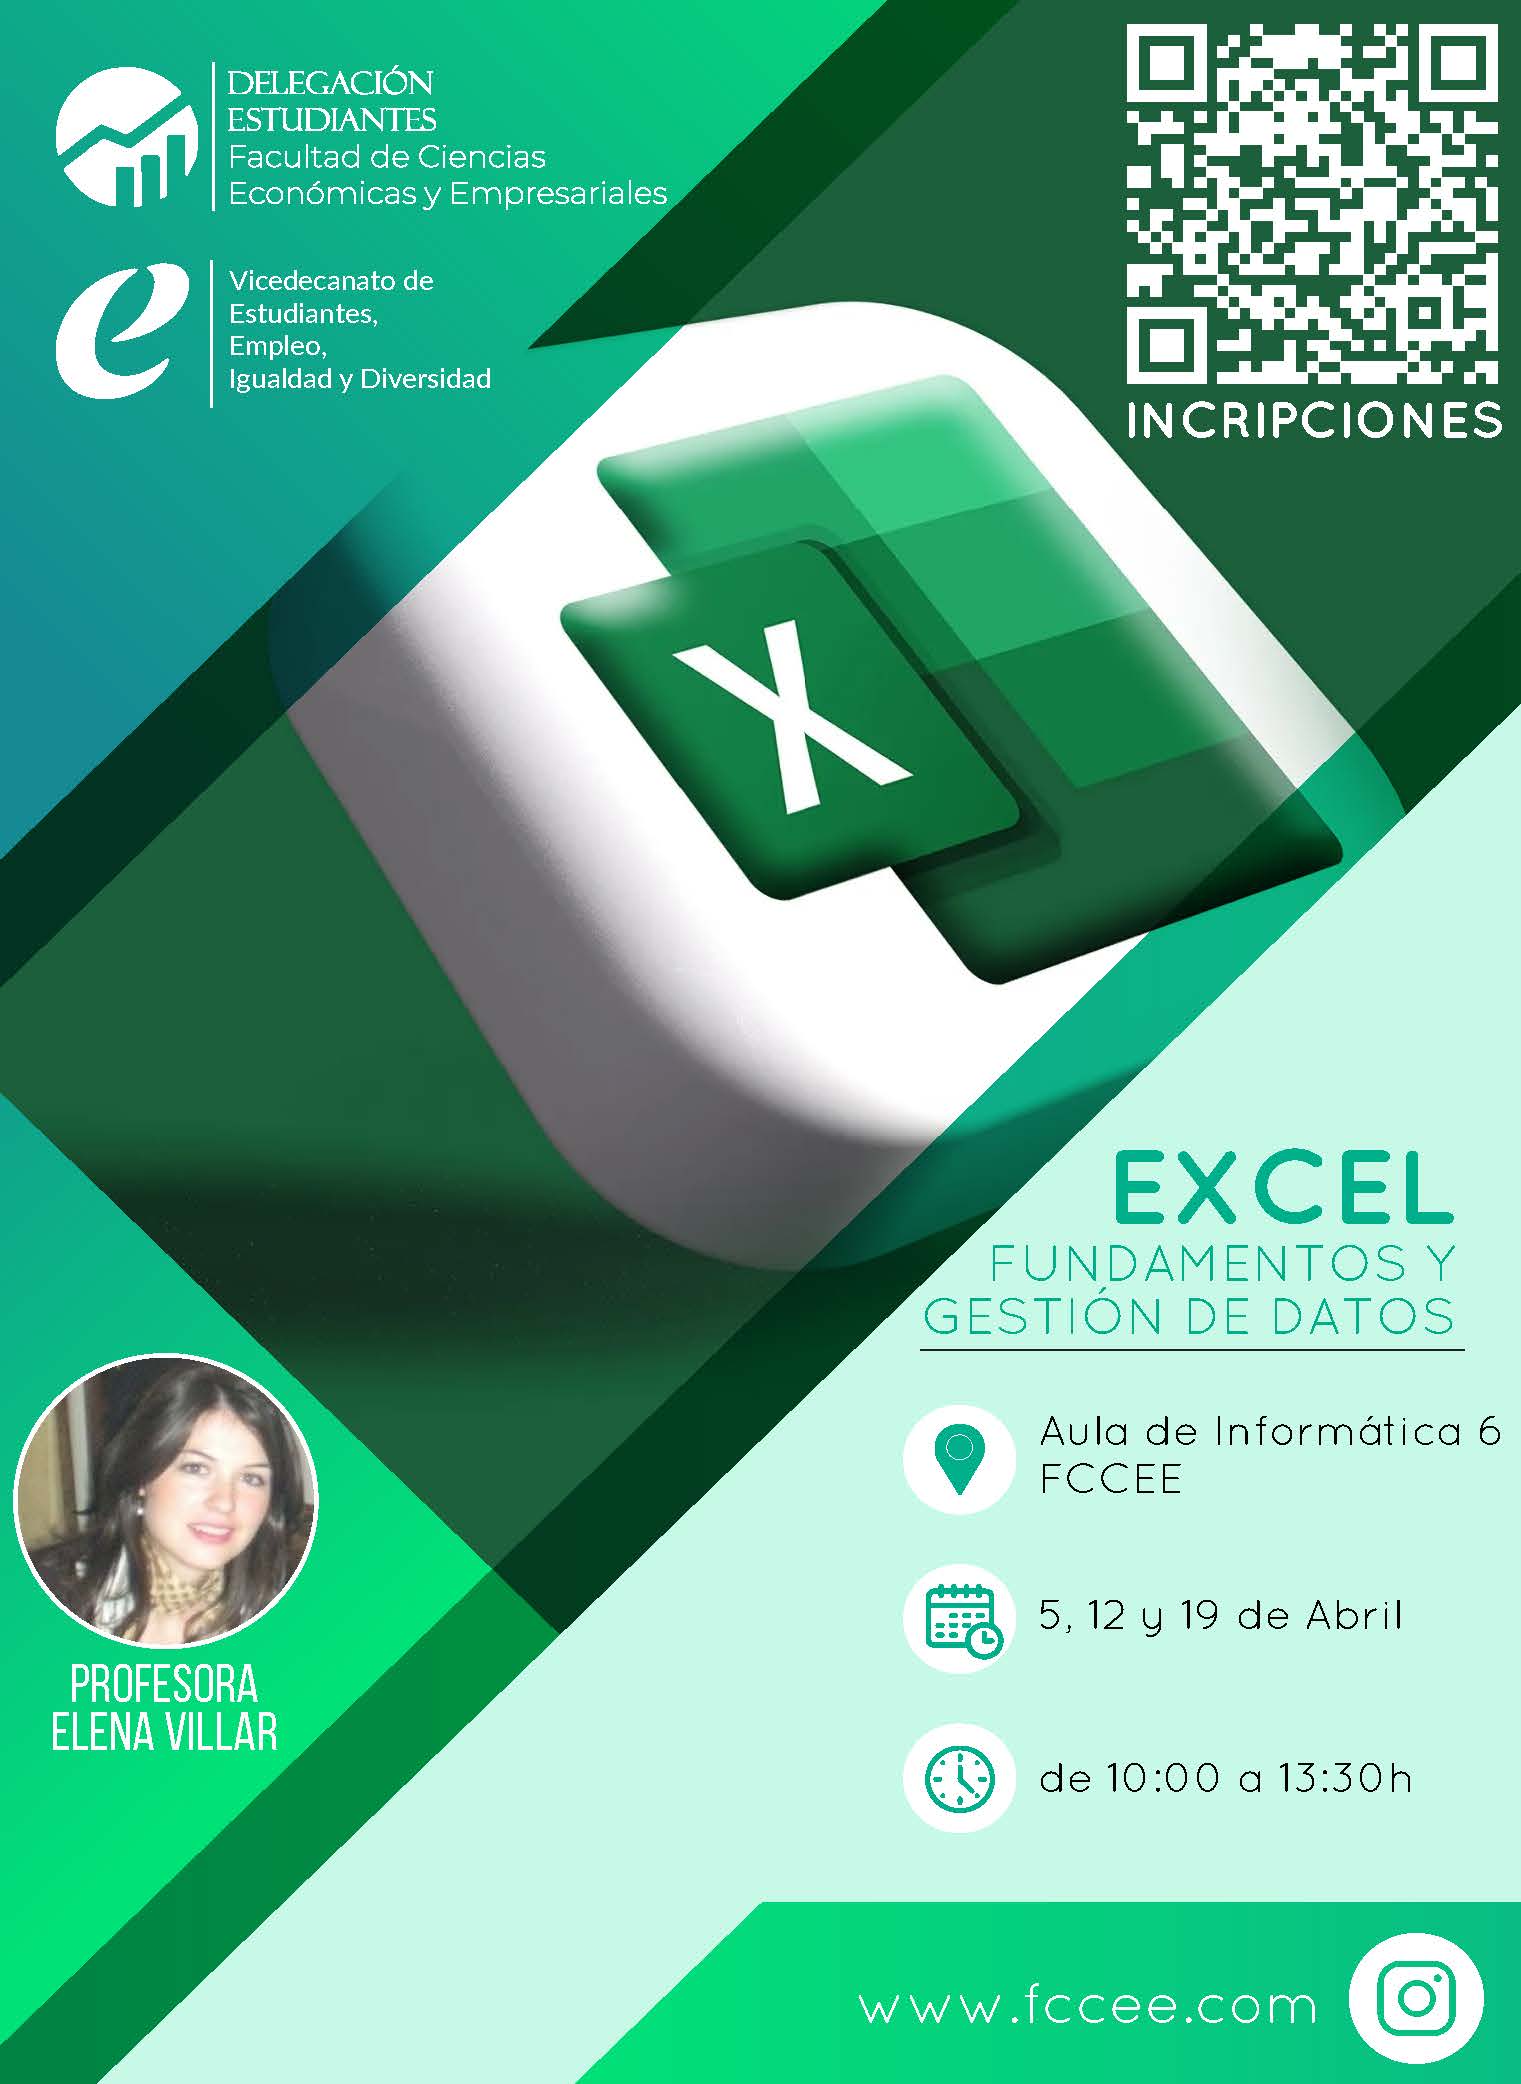 cartel anunciador del Curso de Excel gratuito (previa inscripción): fundamentos y gestión de datos, impartido por la profesora Elena Villar